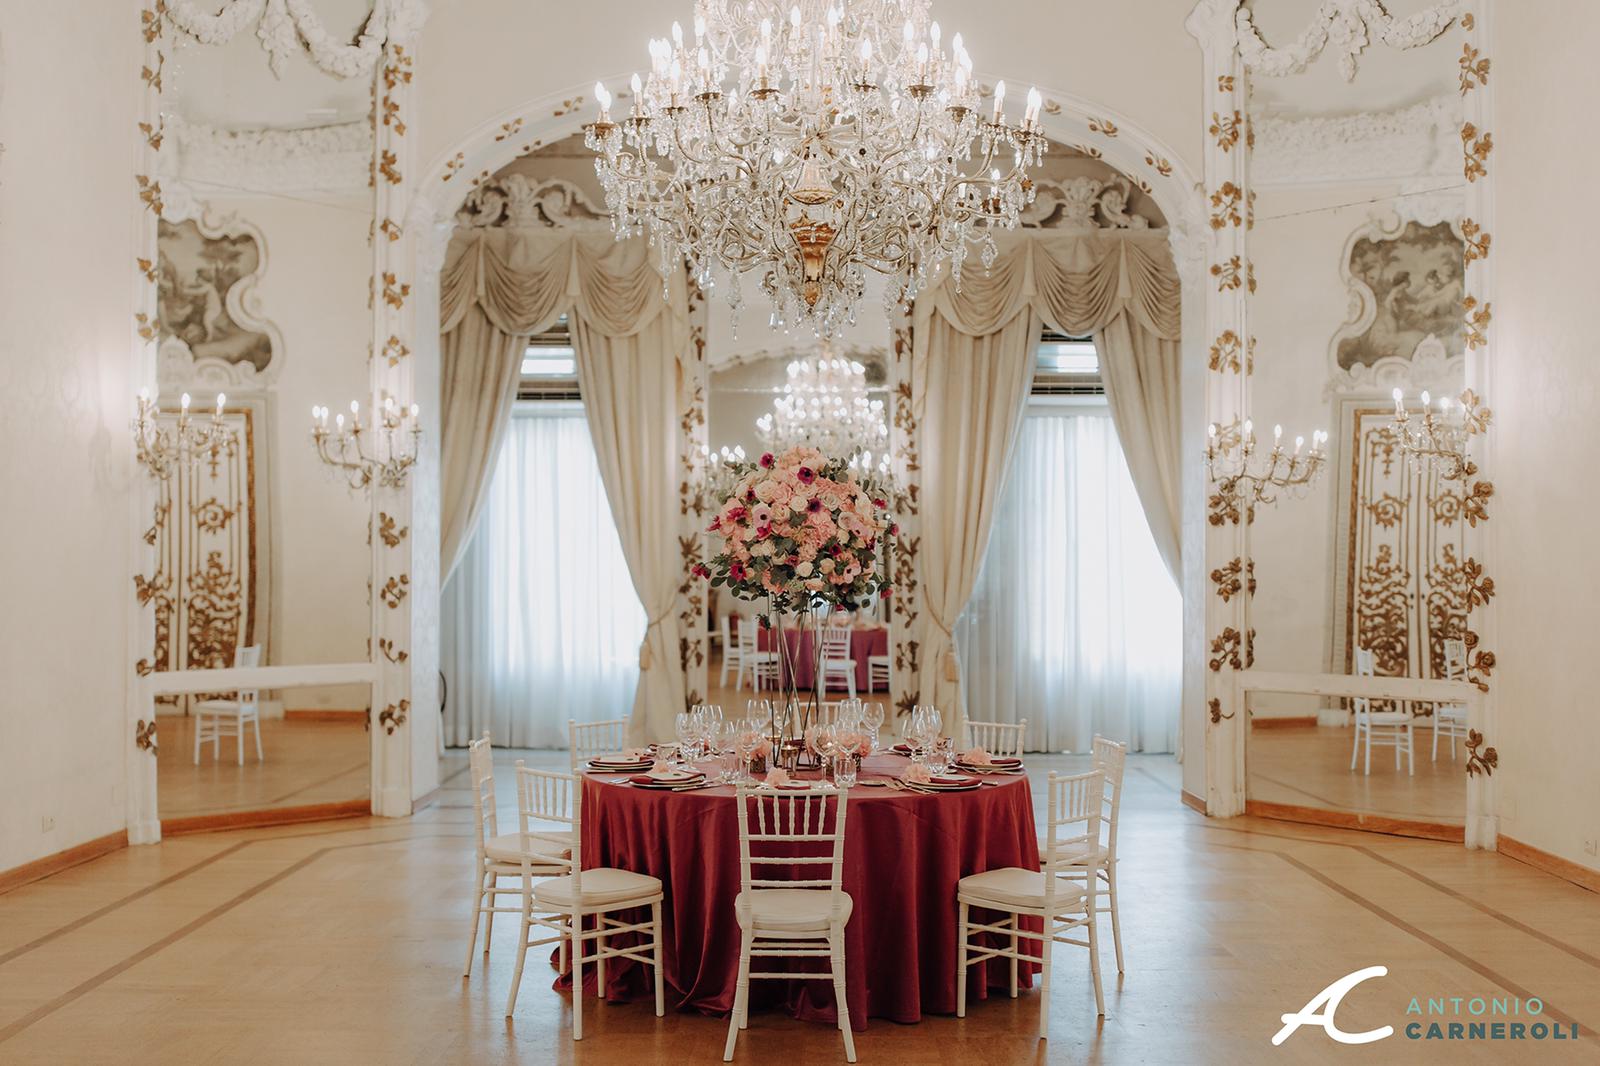 Le Bonheur e Alice Bonifazi presentano le nuove tendenze 2020 del Wedding con l’evento “Design Experience”